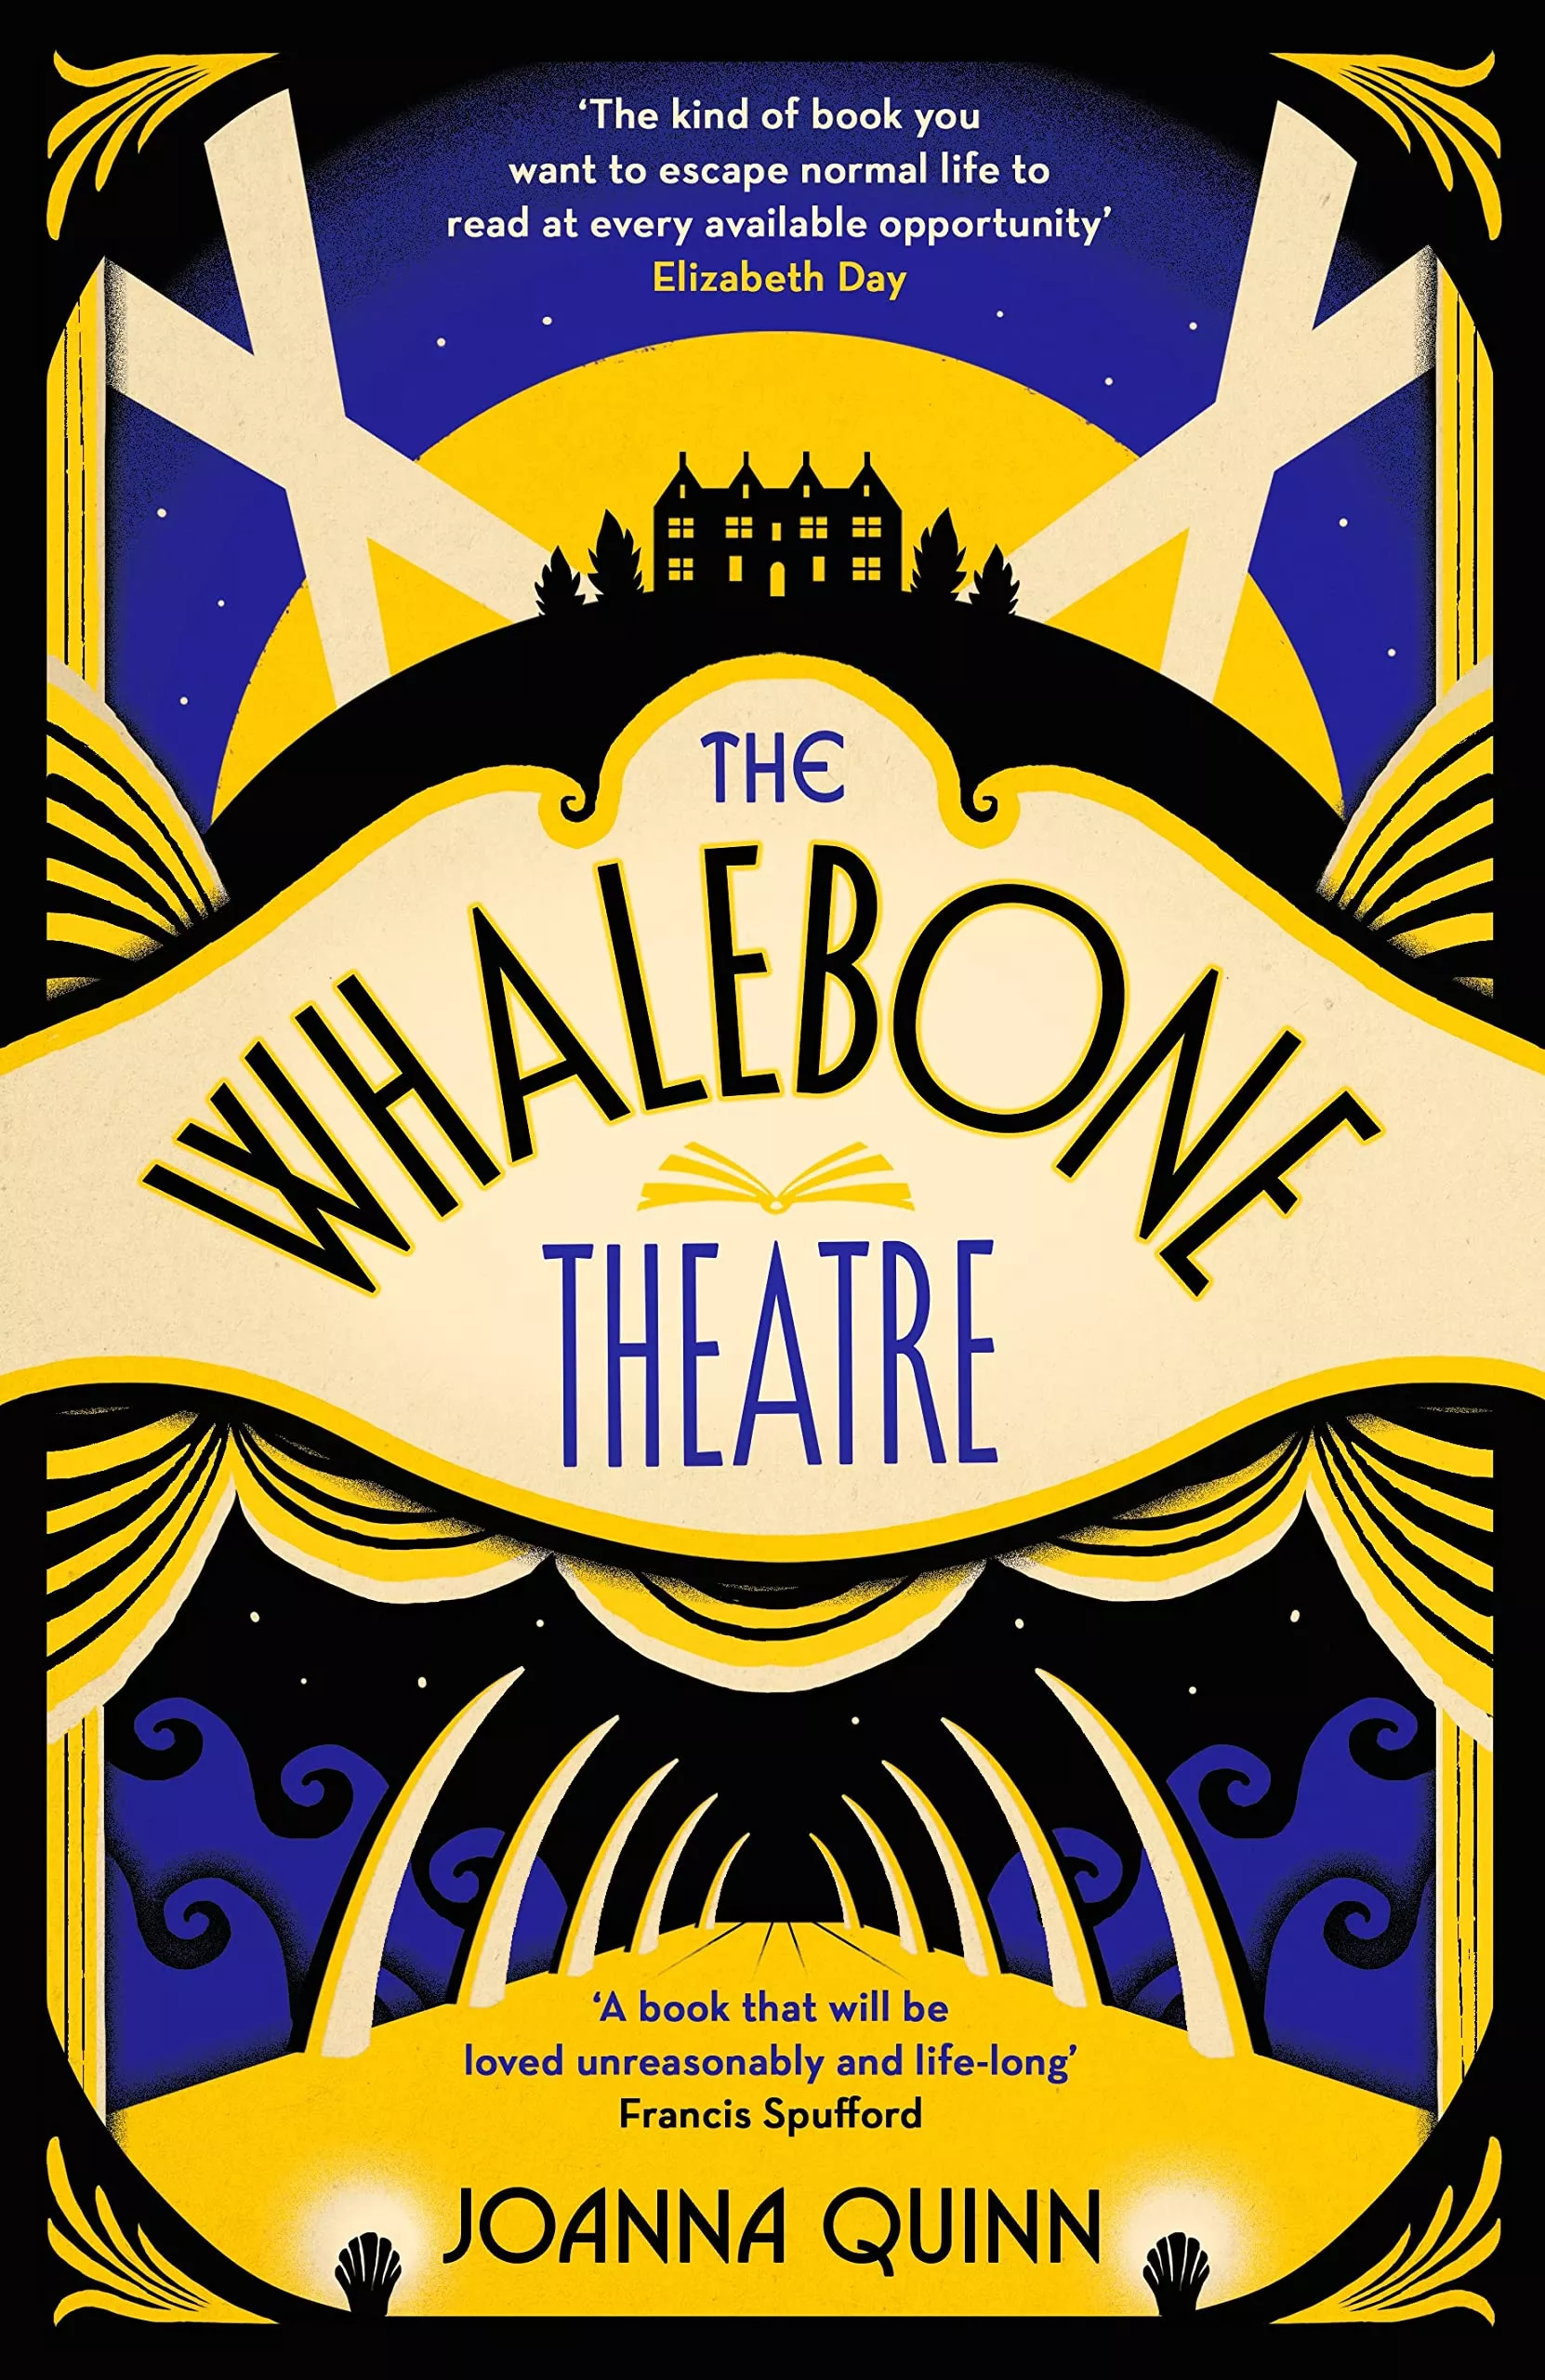 Joanna Quinn, The Whalebone Theatre